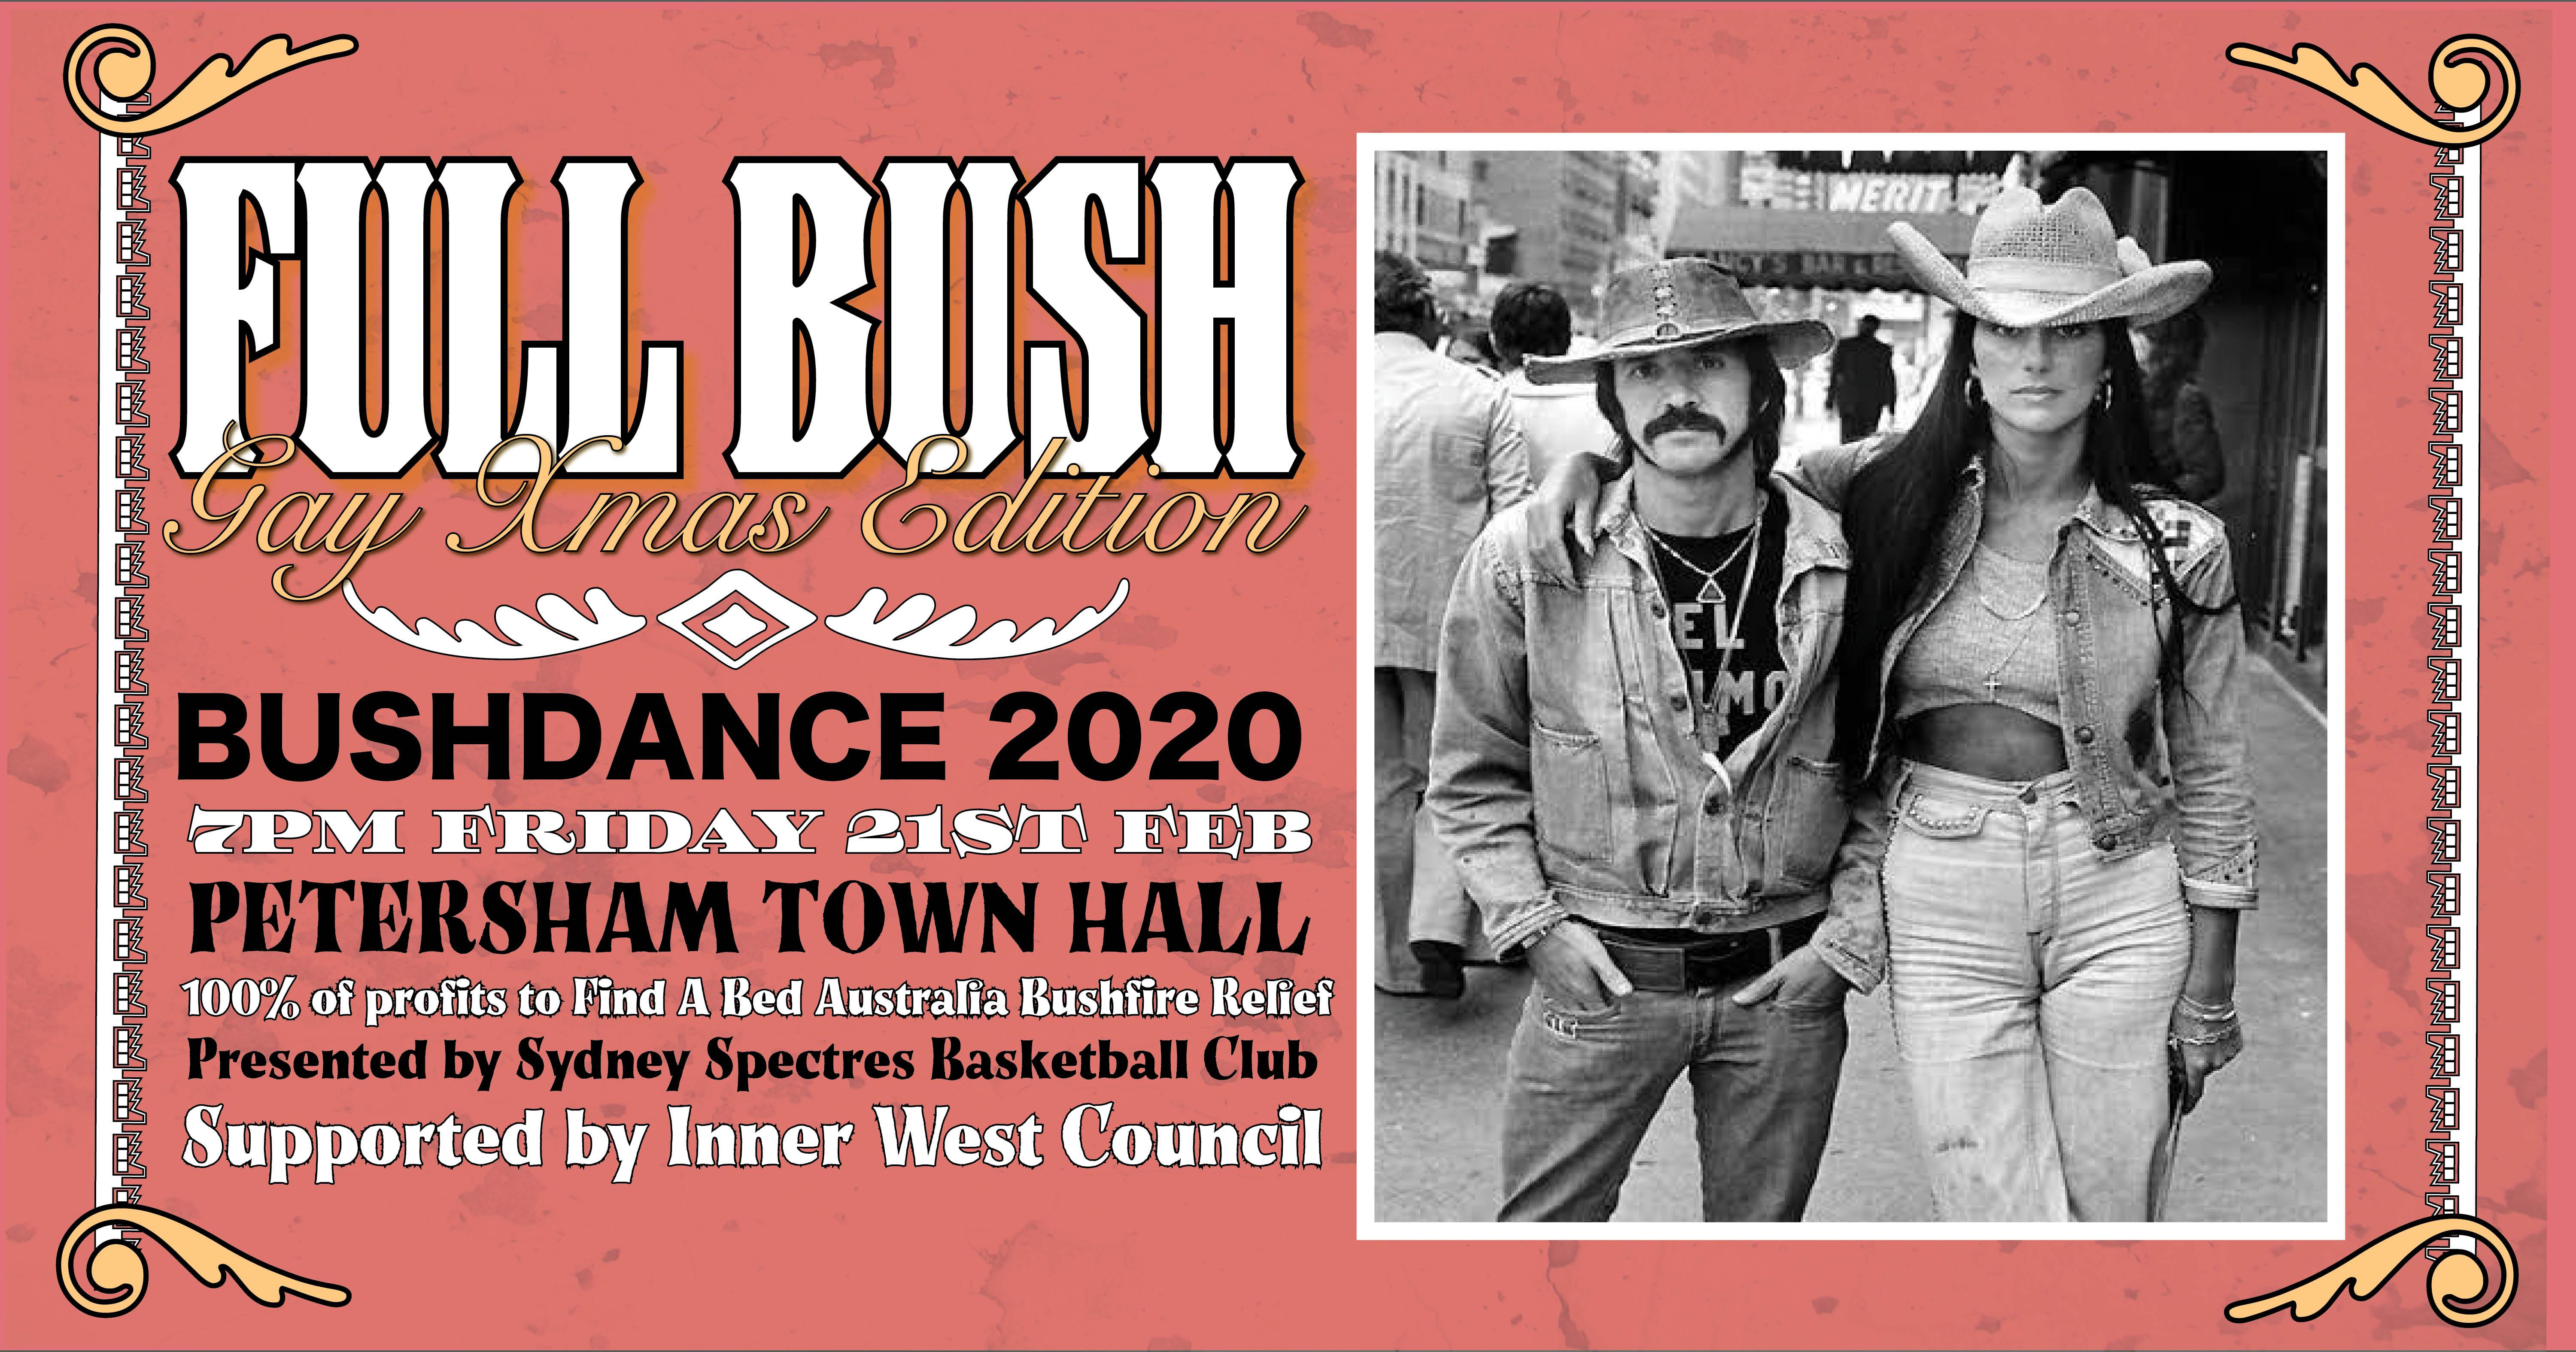 Full Bush: Bushdance 2020